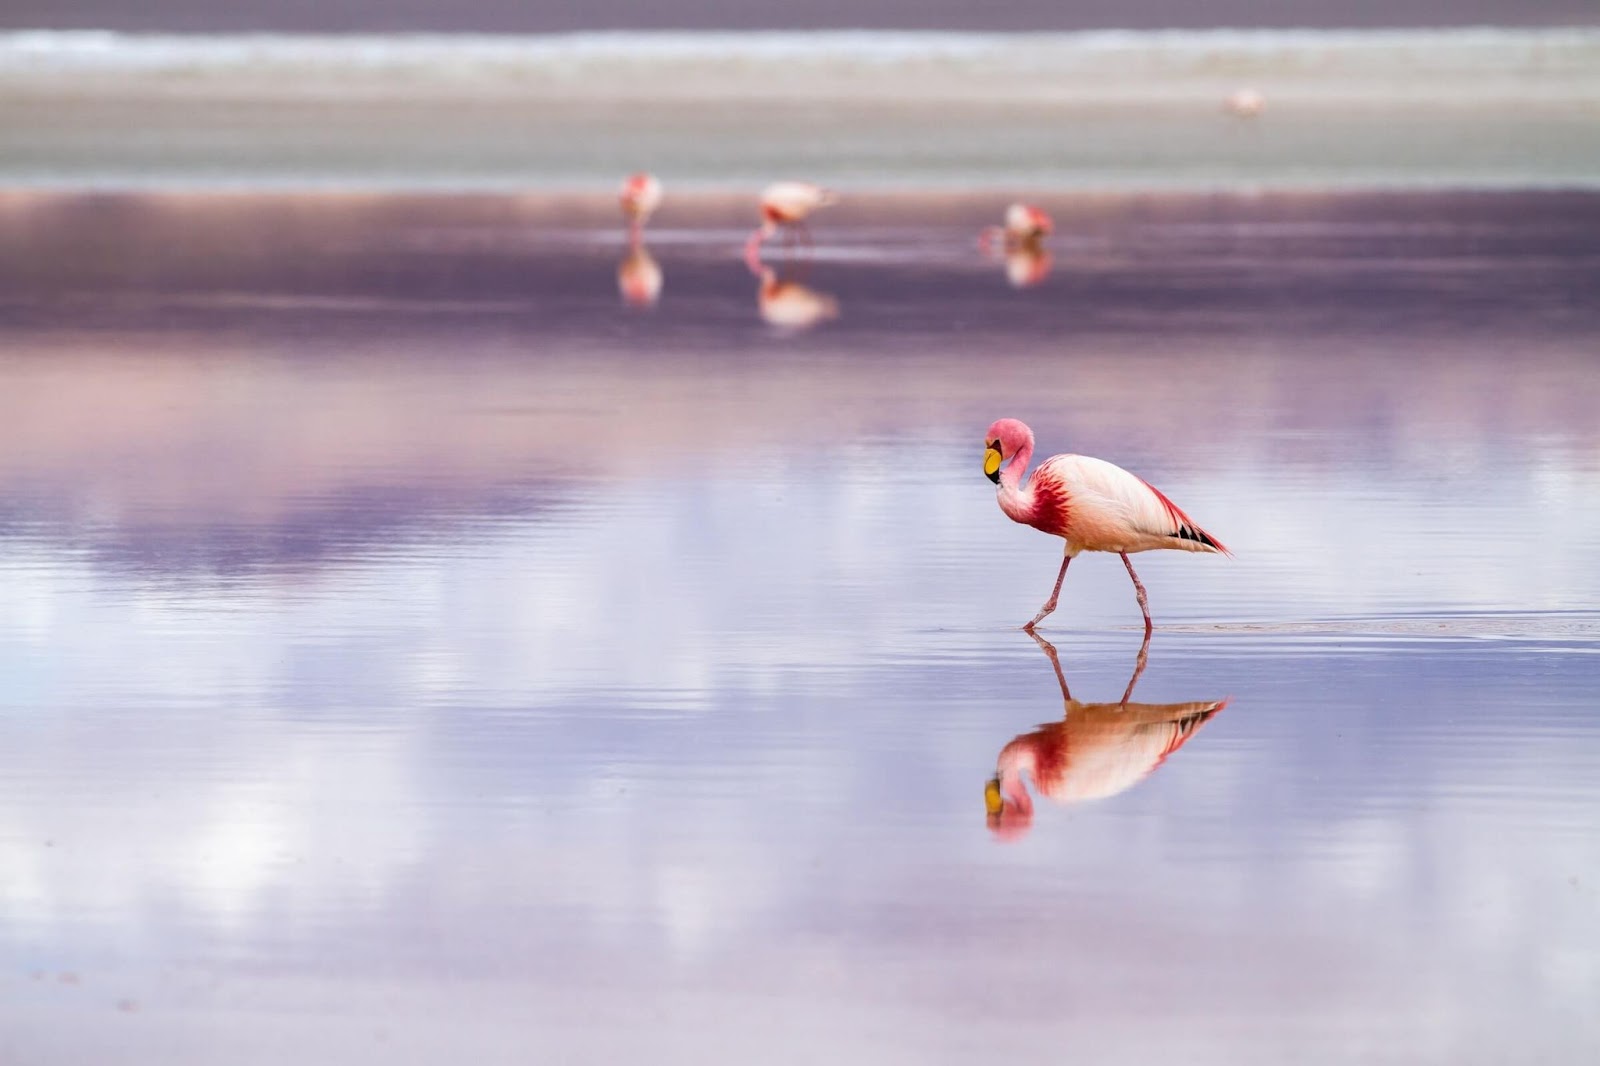 laguna colorada, bolivia, white flamingo, puna flamingo